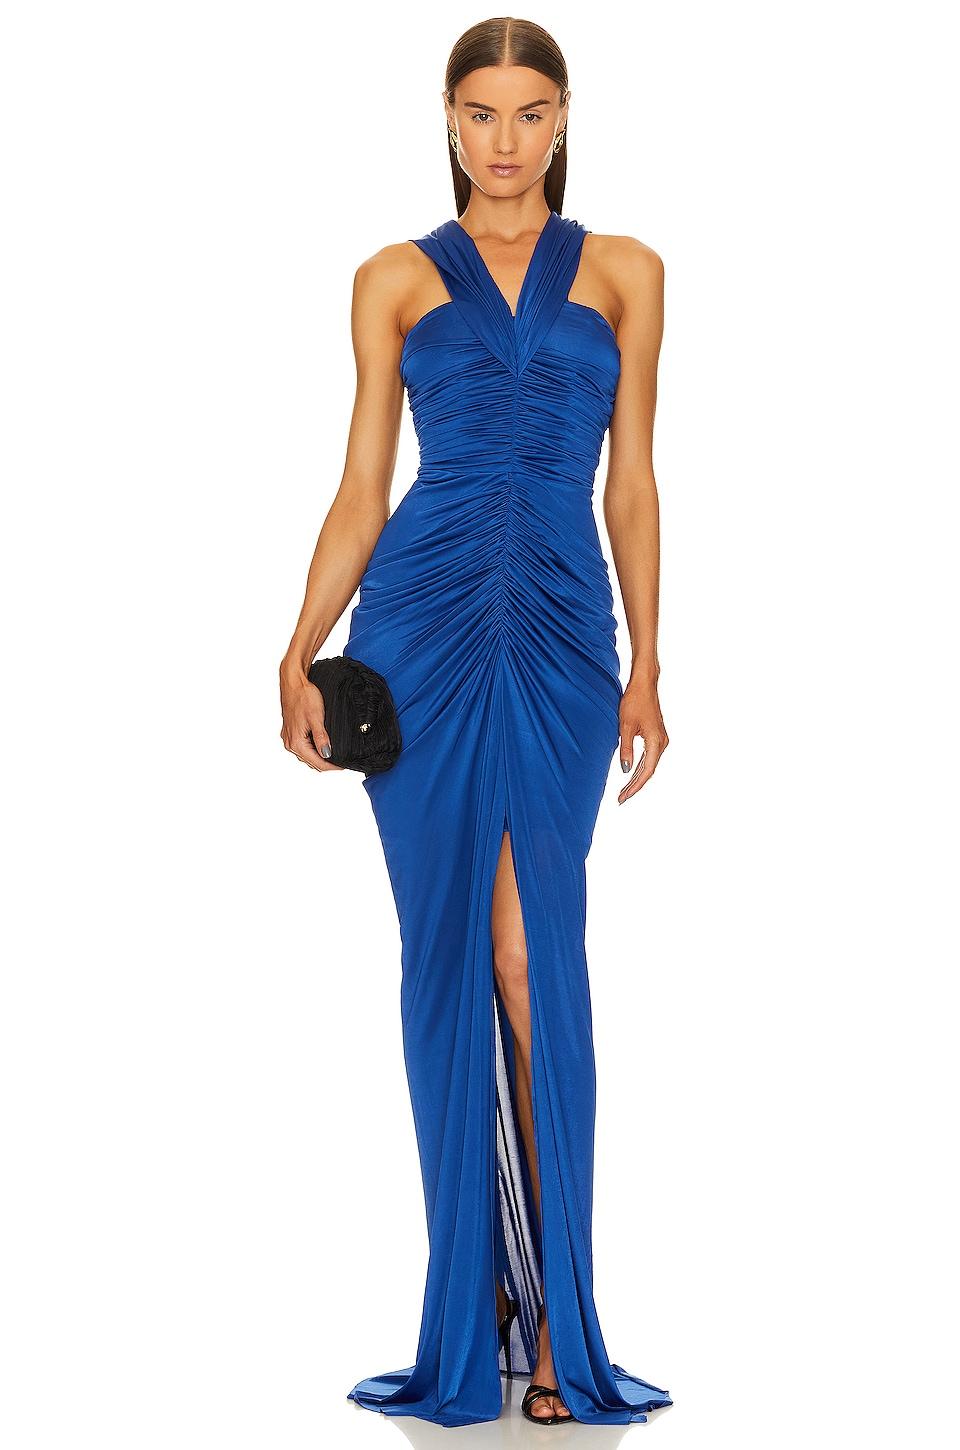 Yaura Tiara Gown in Blue | Lyst